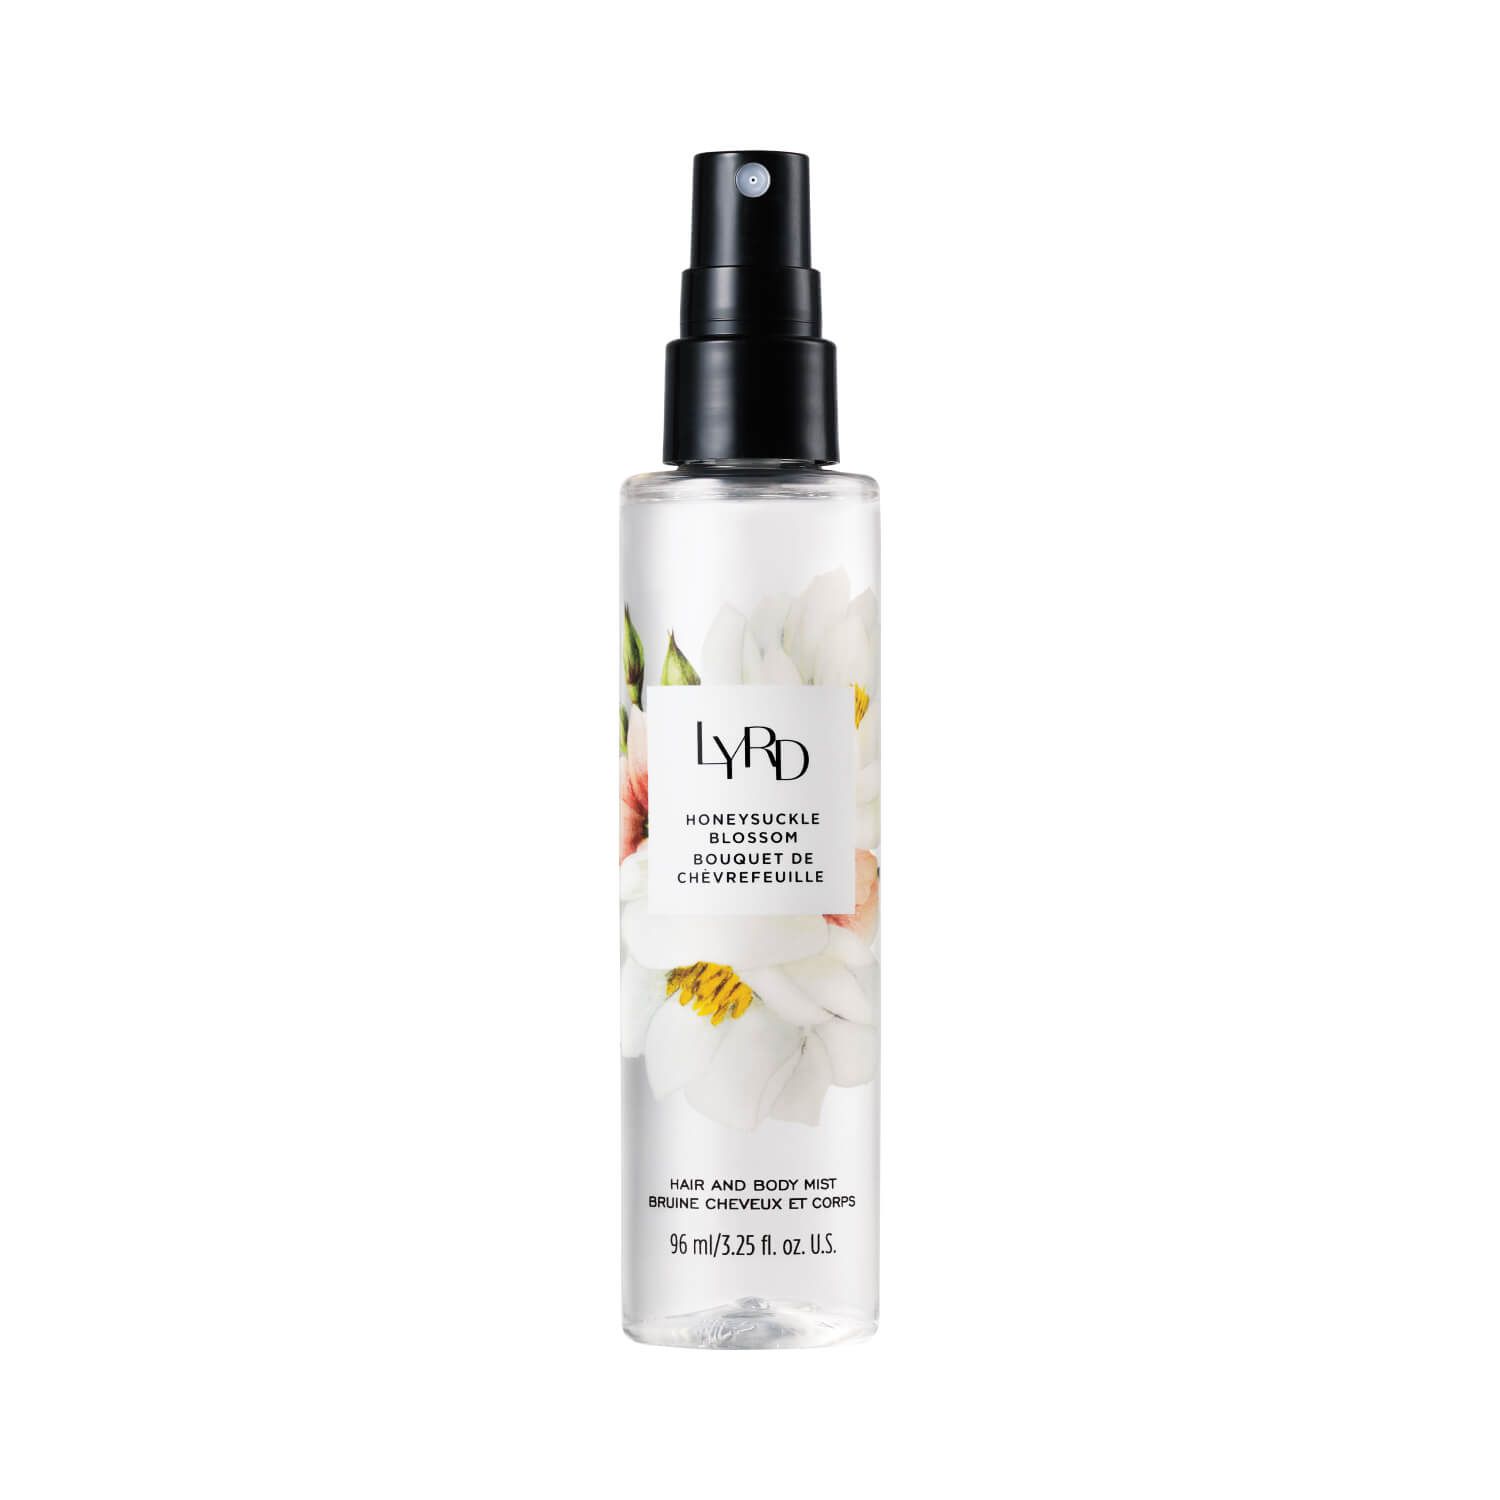 LYRD Honeysuckle Blossom Hair and Body Mist